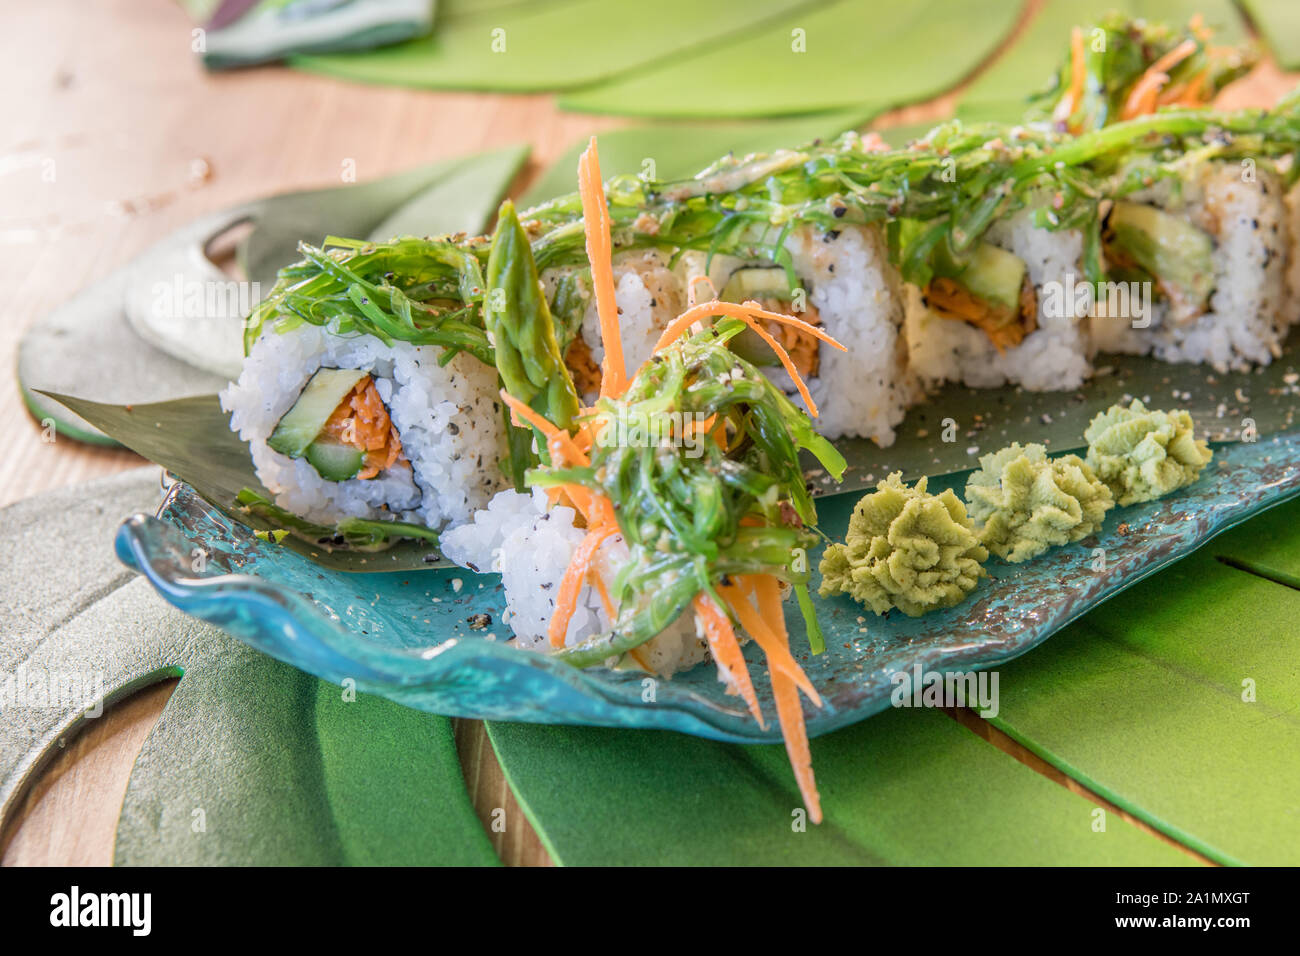 Delicioso plato de sushi, comida preparada en dish, estilo de fusión. Foto de stock